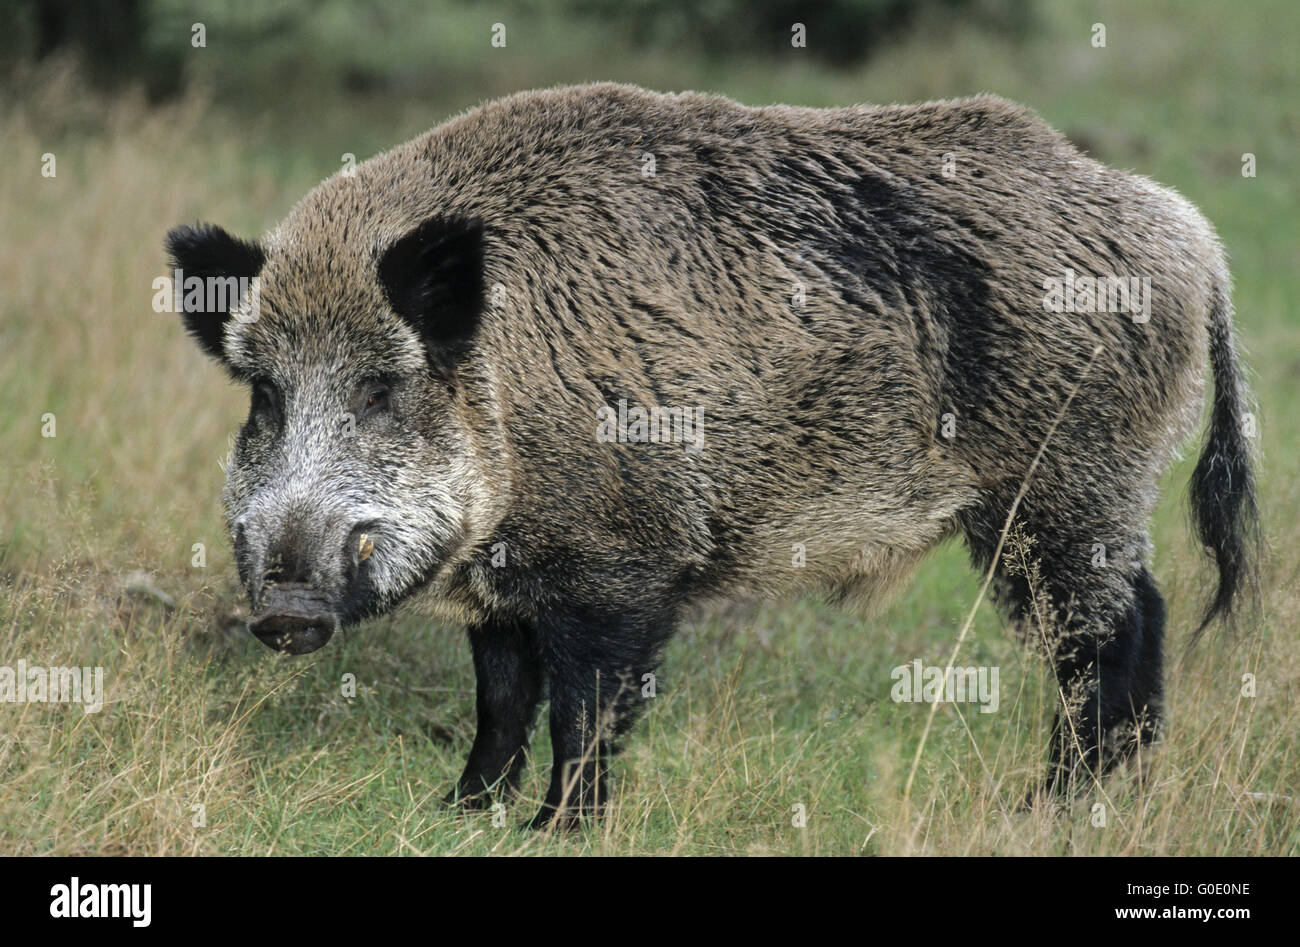 Wildschwein Keiler auf einer Waldlichtung Stockfotografie - Alamy